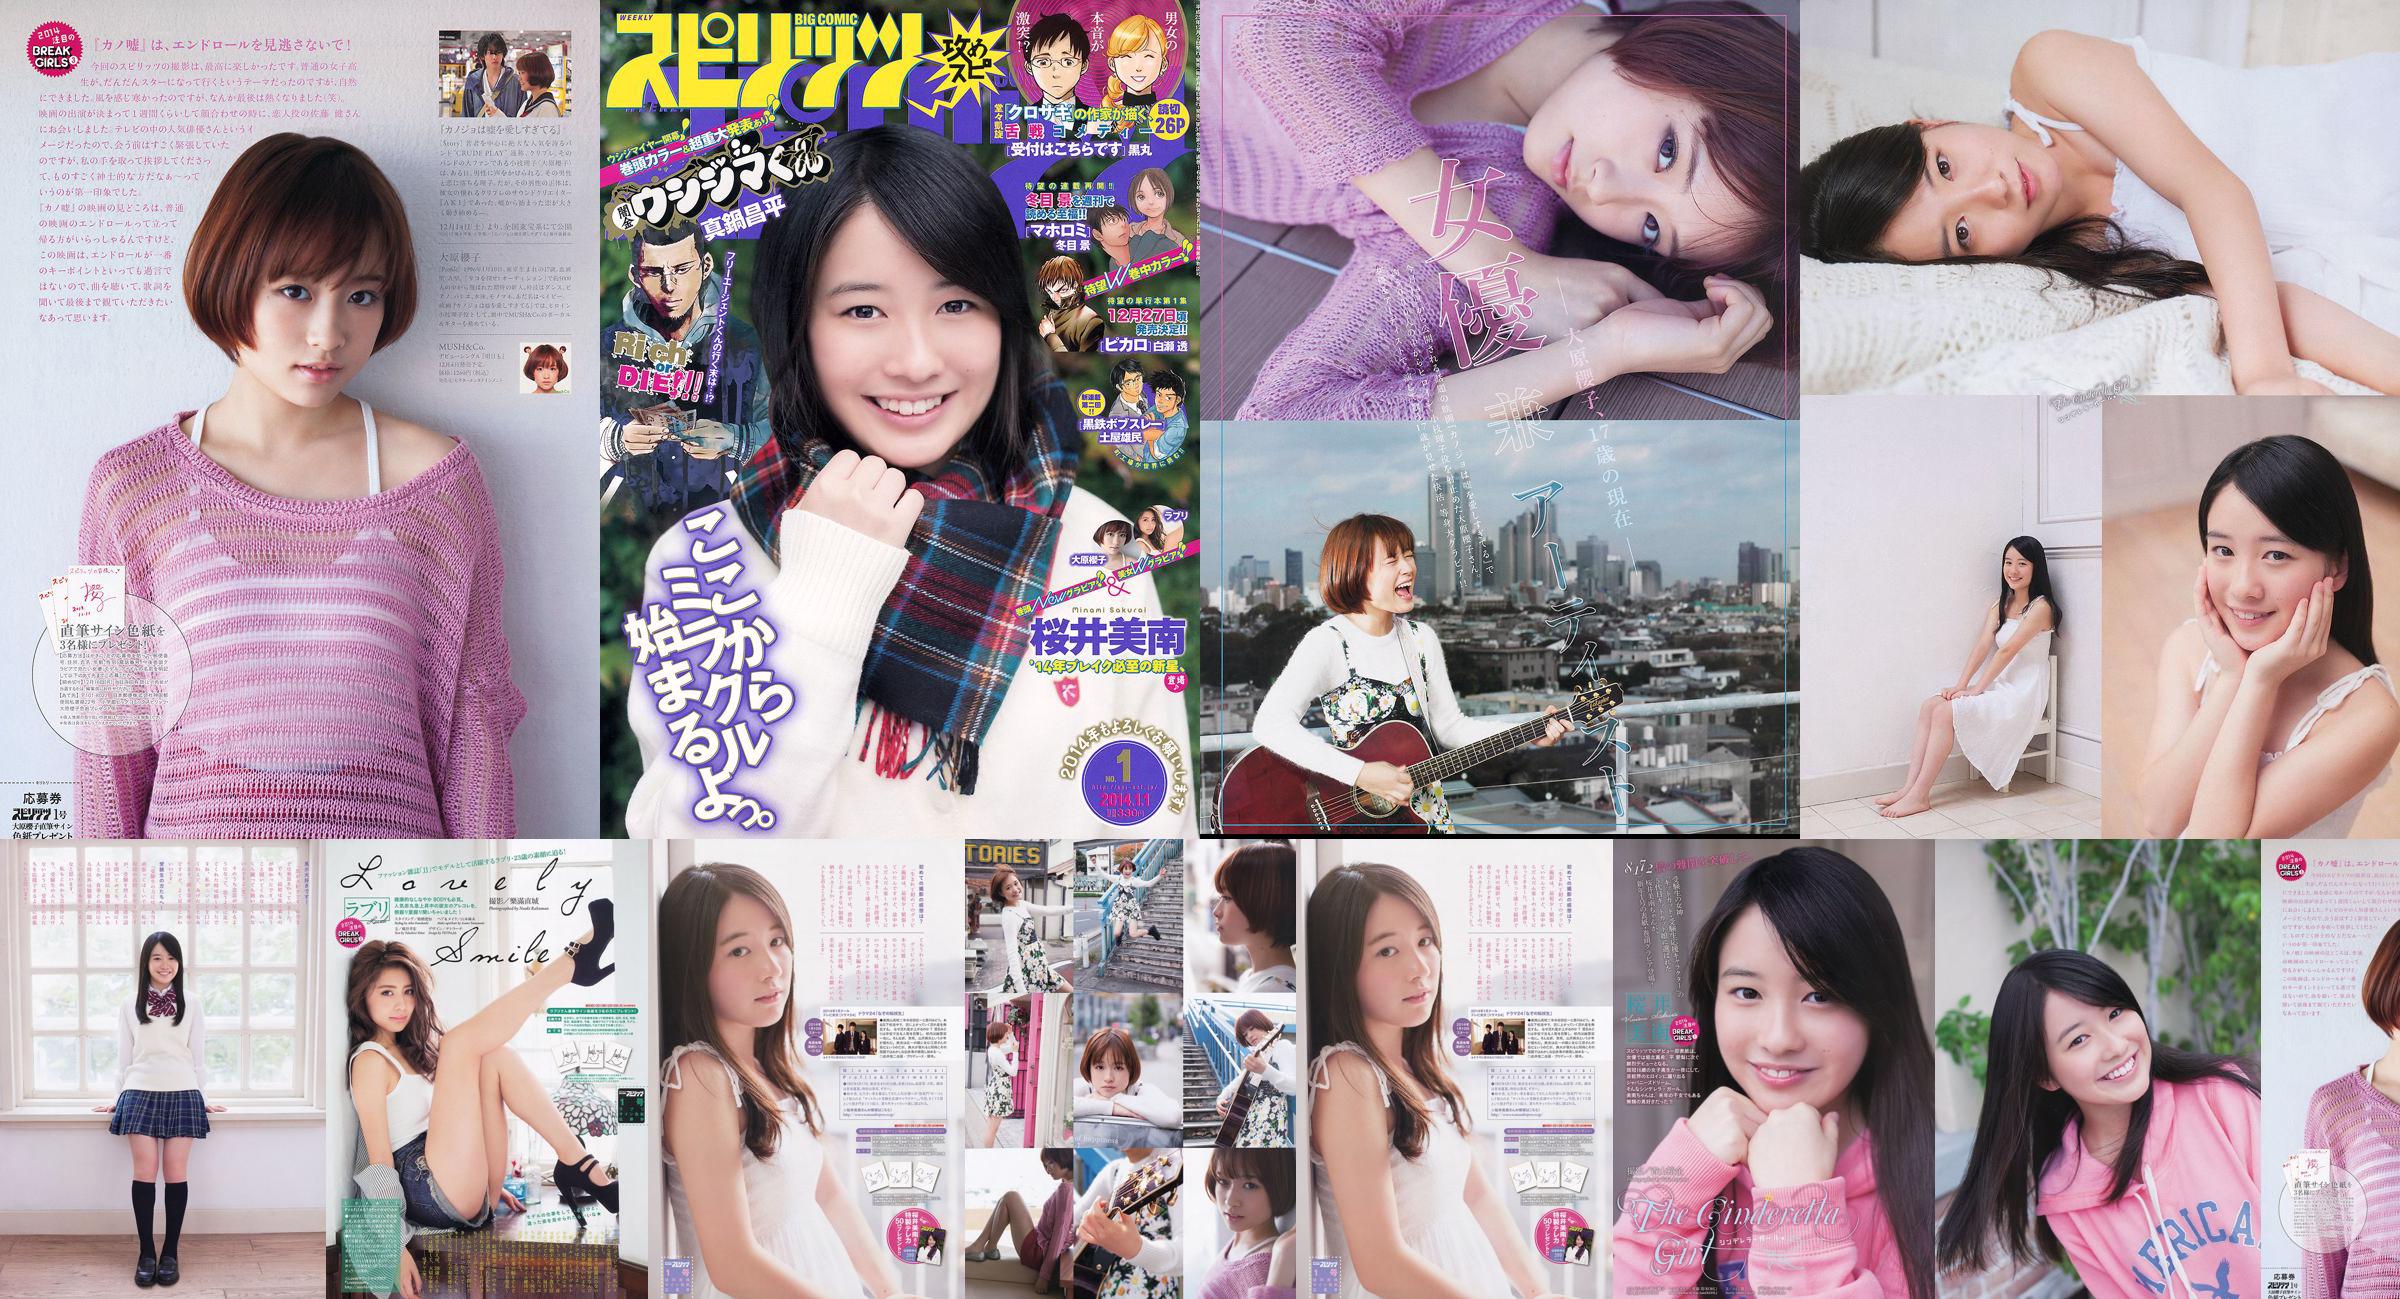 [Wöchentliche große Comic-Geister] Sakurai Minan Ohara Sakurako 2014 No.01 Photo Magazine No.efd445 Seite 2